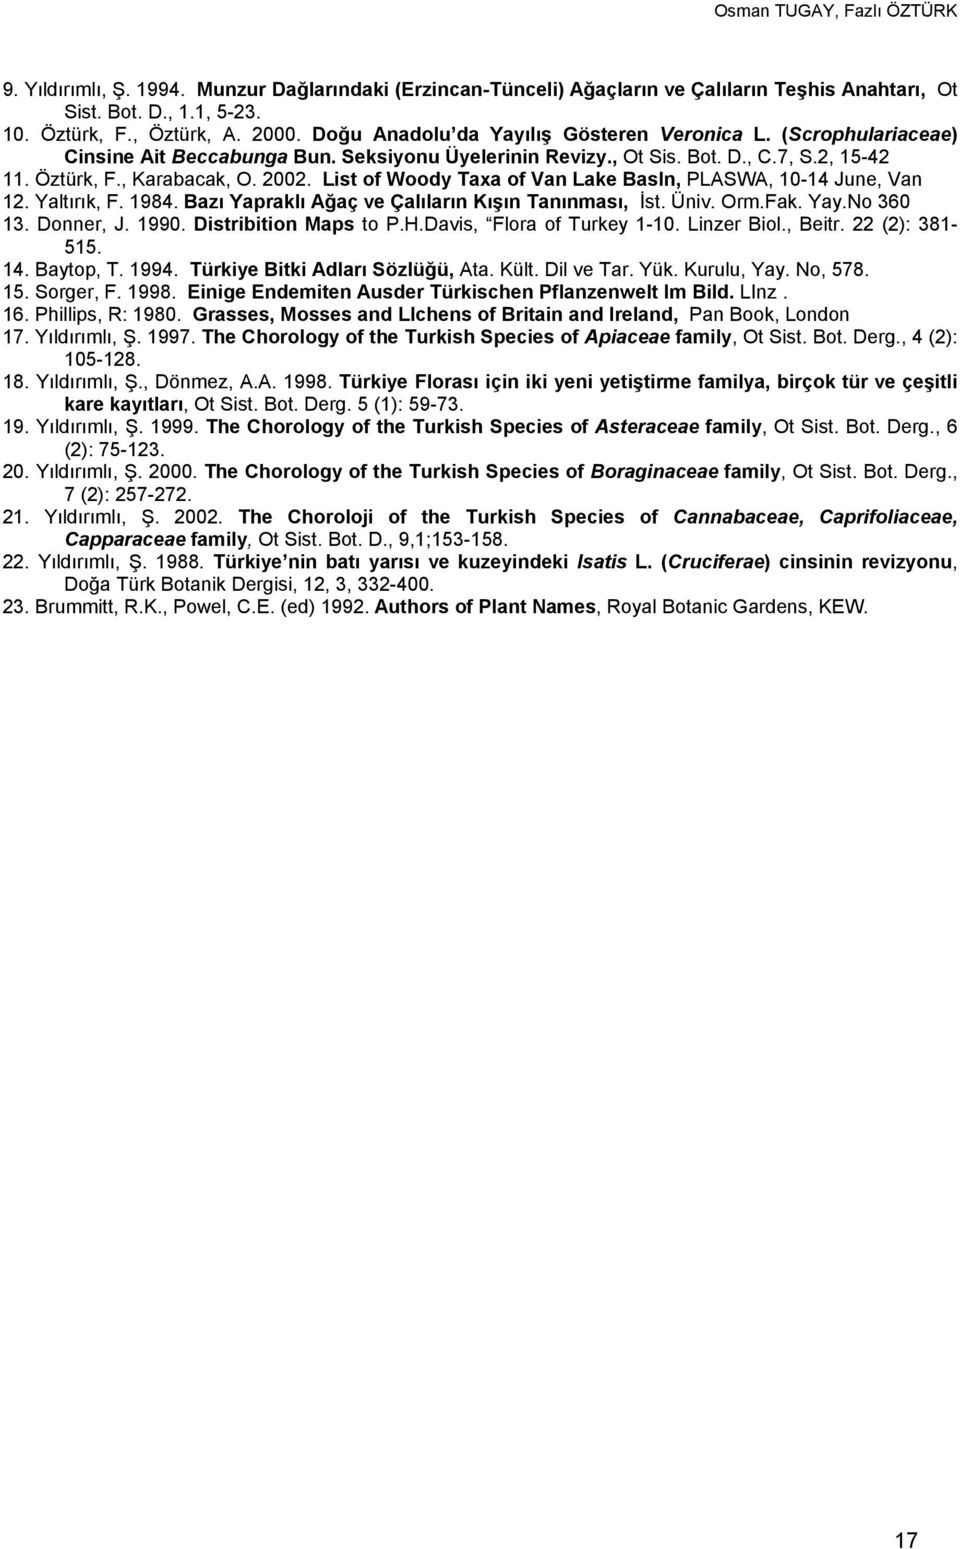 List of Woody Taxa of Van Lake BasIn, PLASWA, 10-14 June, Van 12. Yaltırık, F. 1984. Bazı Yapraklı Ağaç ve Çalıların Kışın Tanınması, İst. Üniv. Orm.Fak. Yay.No 360 13. Donner, J. 1990.